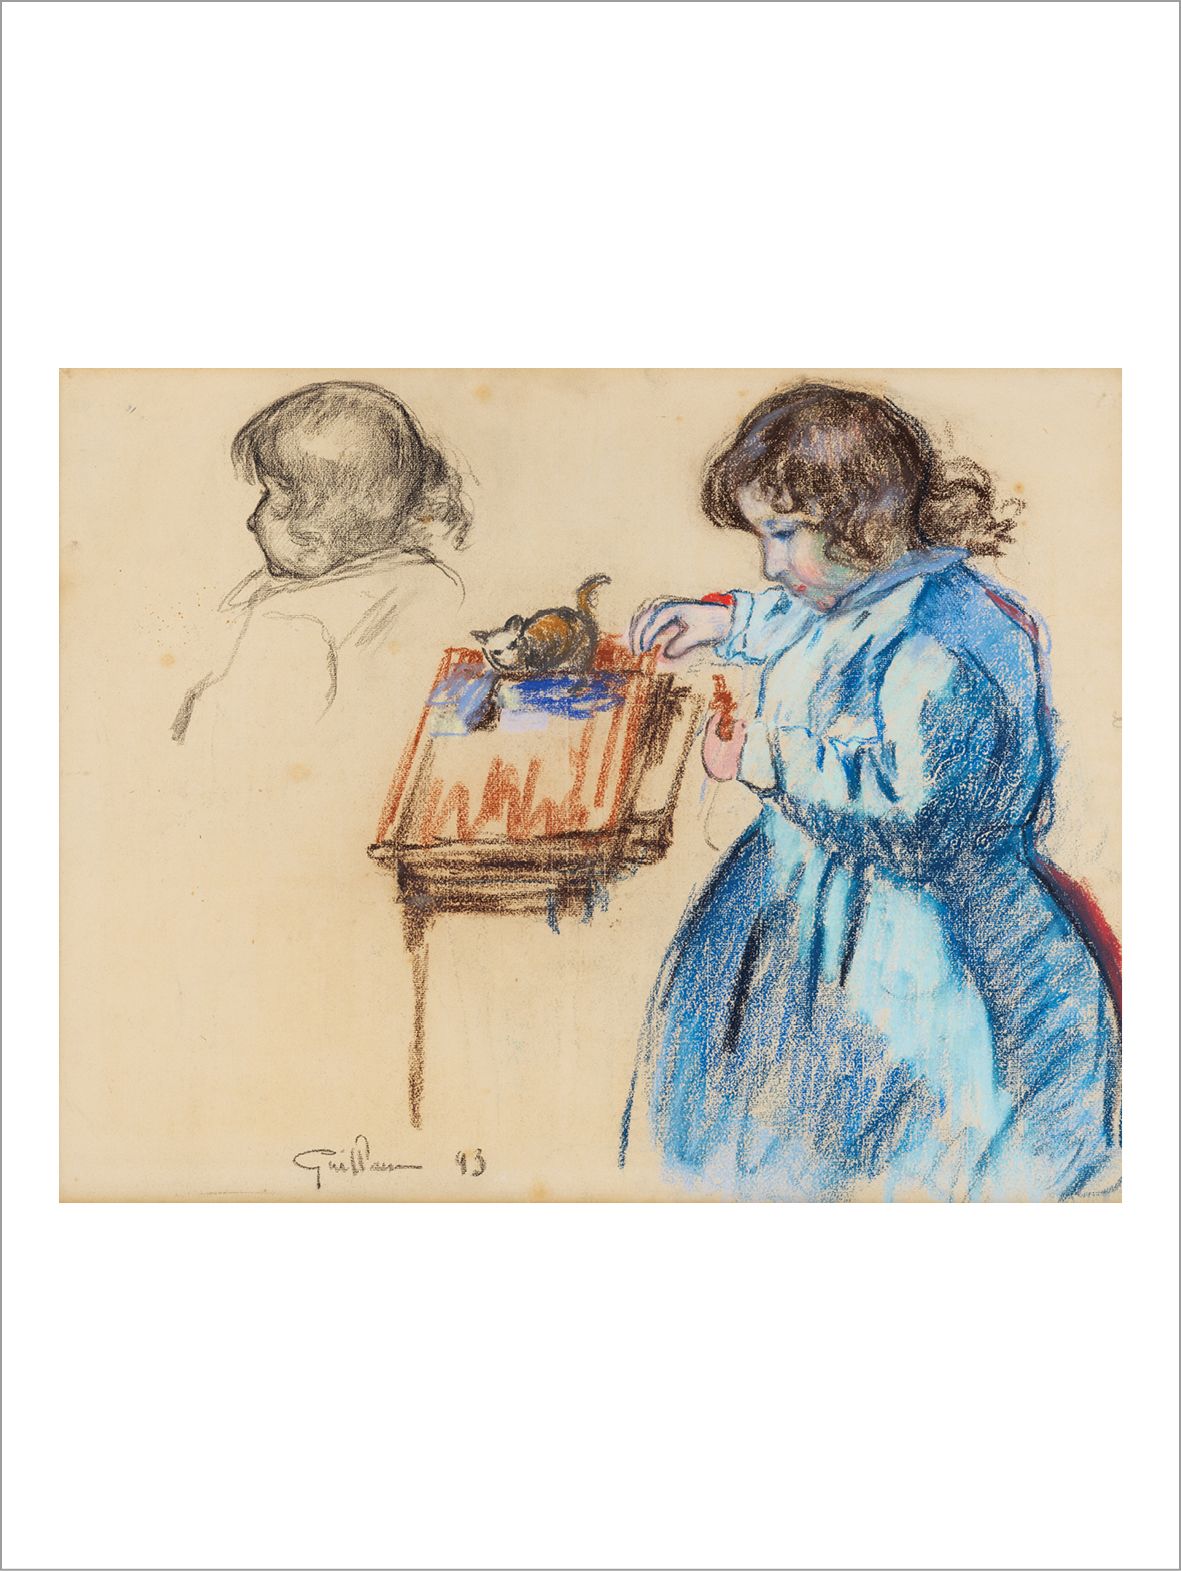 Armand GUILLAUMIN (1841-1927) 年轻女孩与她的猫玩耍，1893年
纸上粉彩。
左下角有签名和日期。
纸上粉彩。
左下角有签名和日期。&hellip;